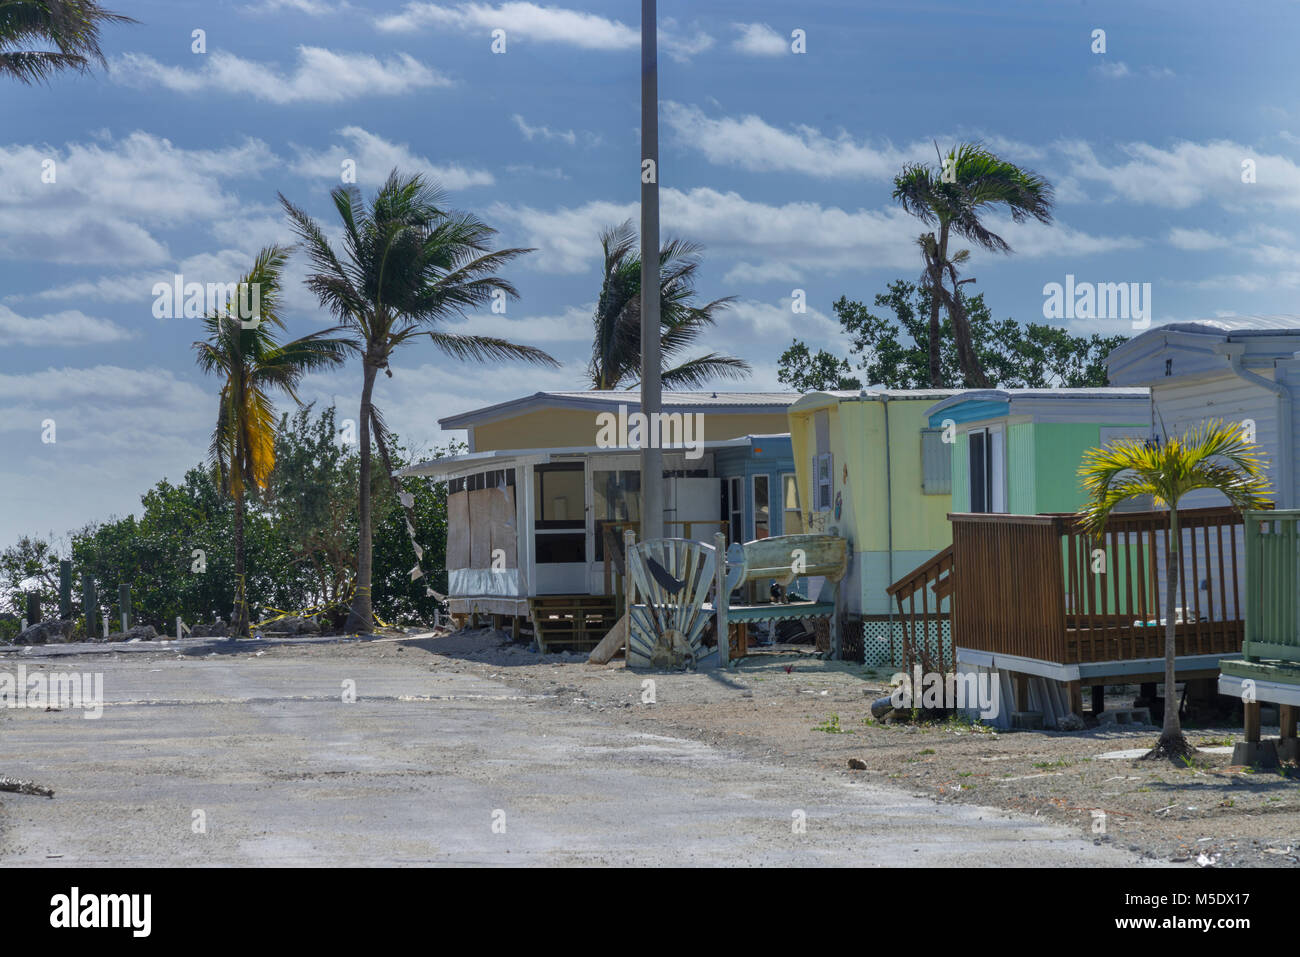 Uragano Irma danni provocati dalla tempesta in abbandonato parco del rimorchio, Islamorada, Florida, Stati Uniti d'America Foto Stock